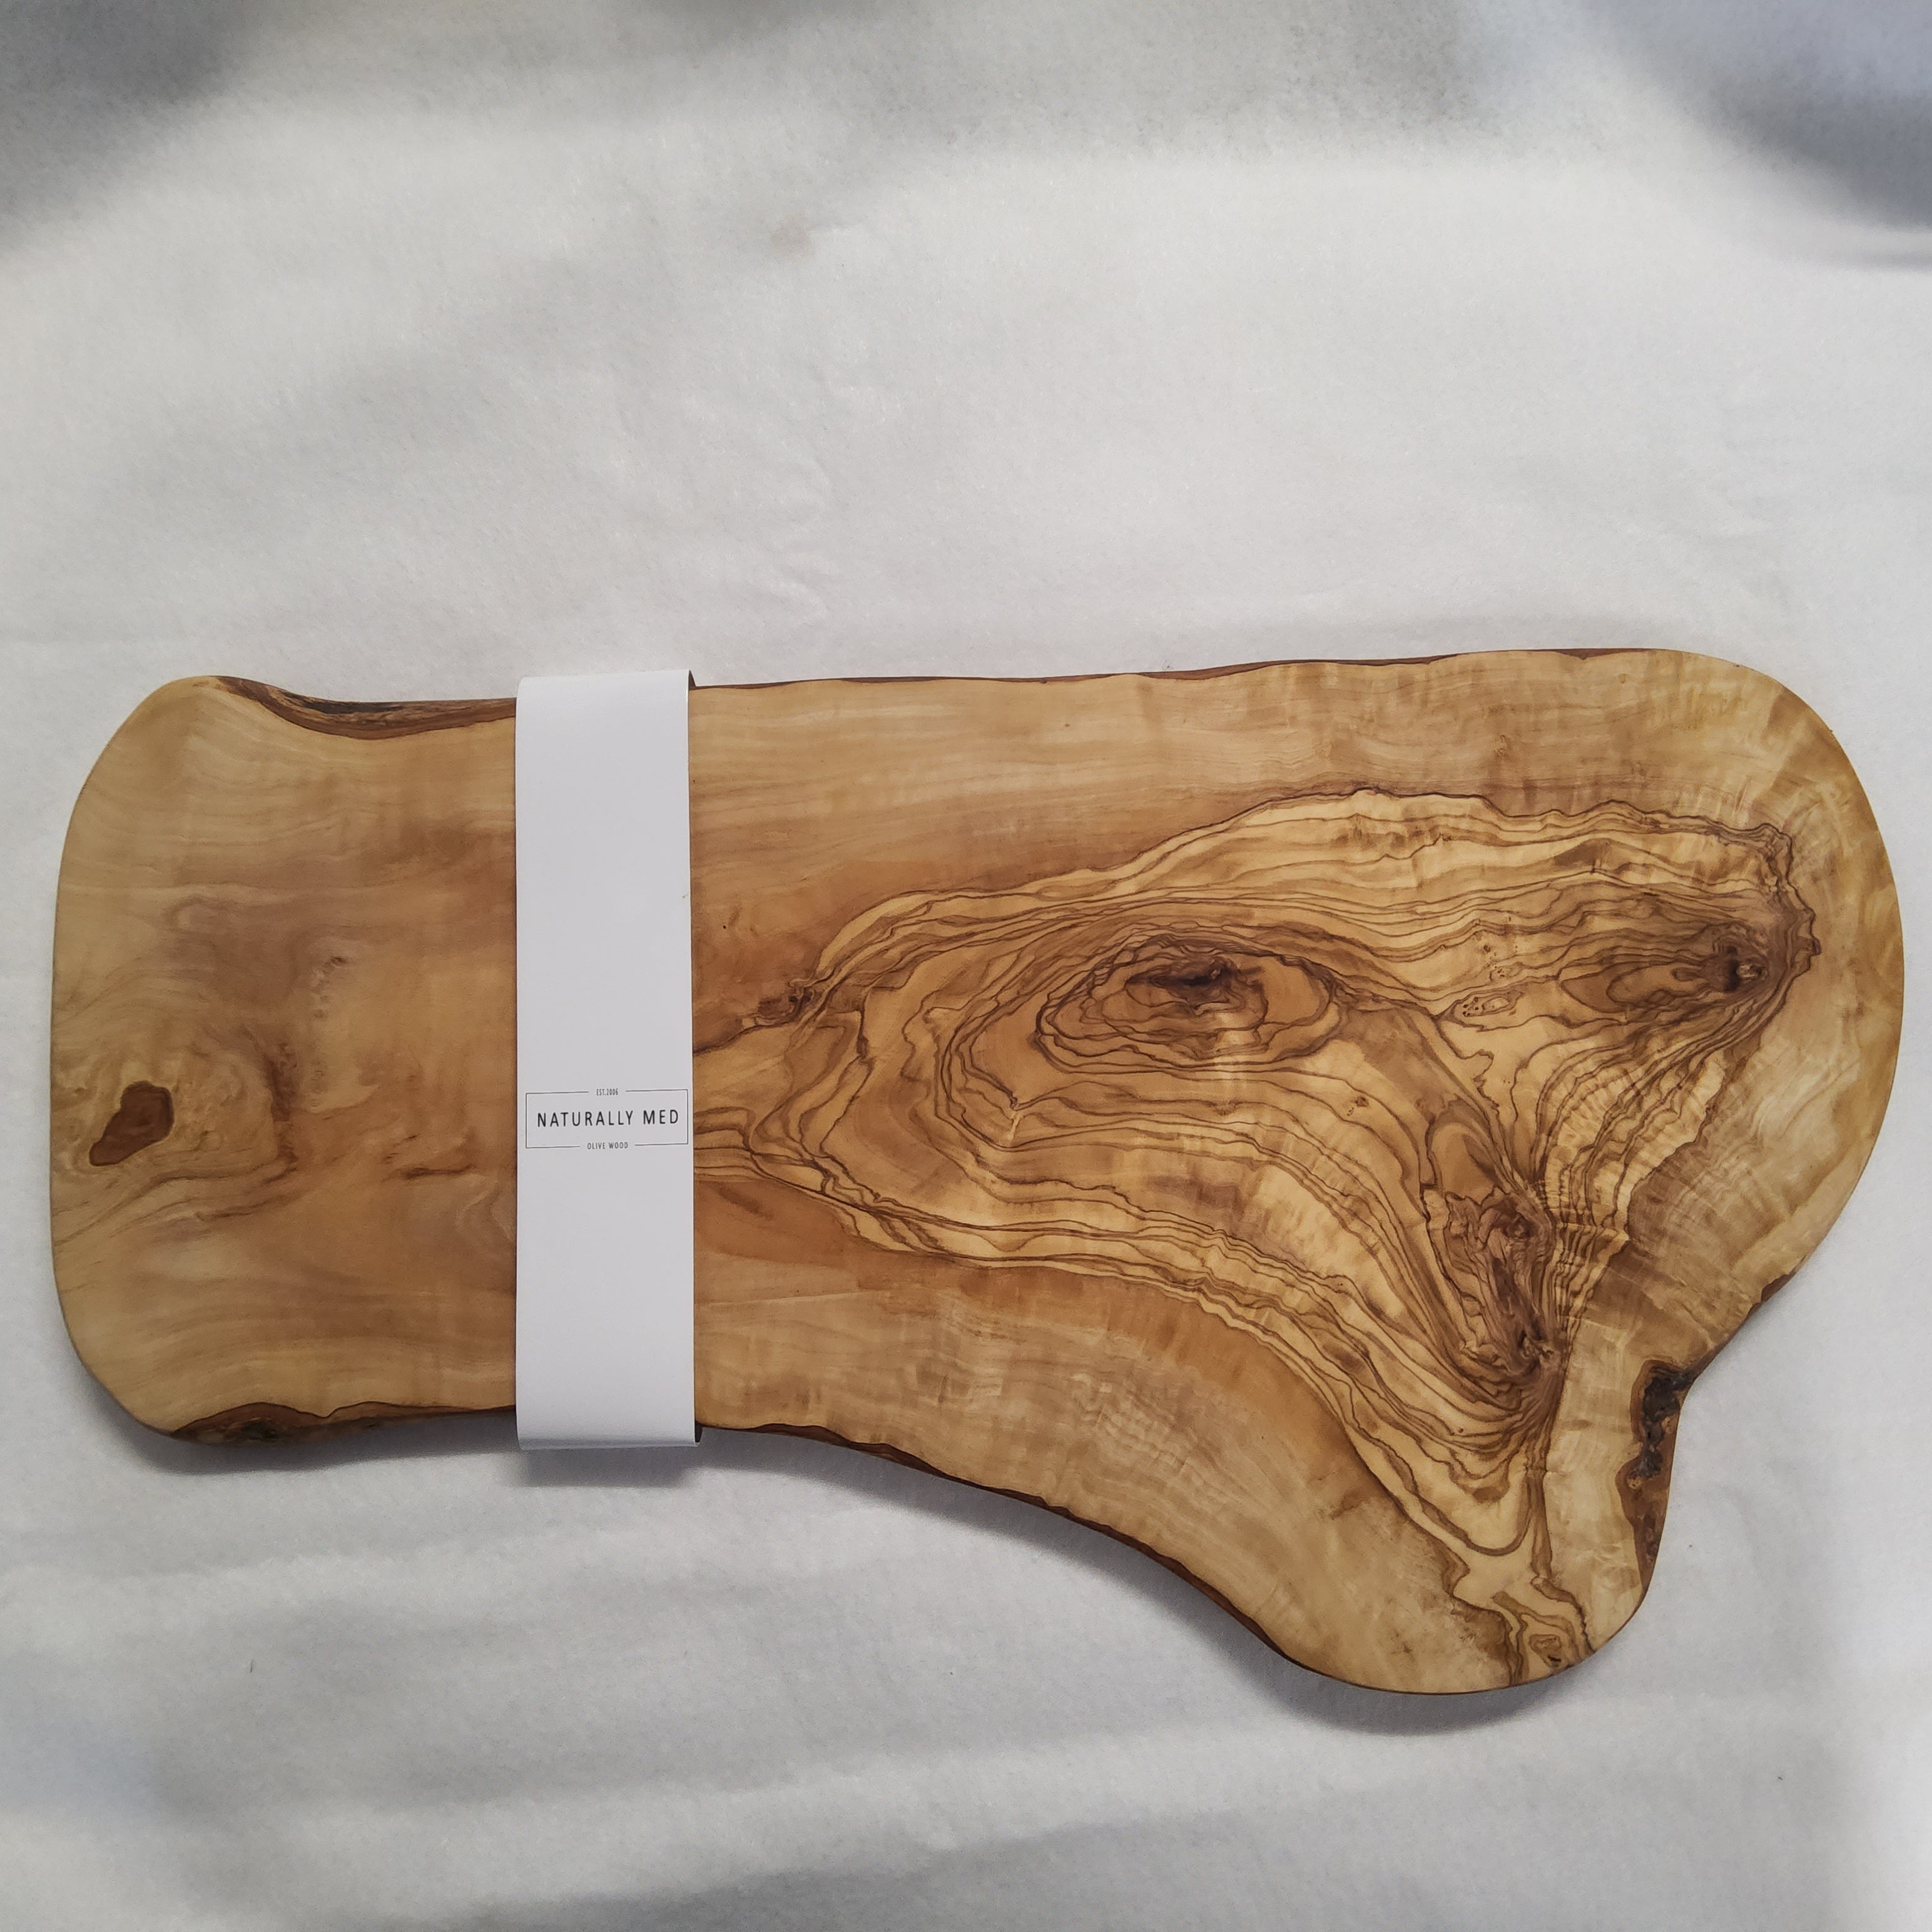 Olive Wood Chopping Board - NM/OL051